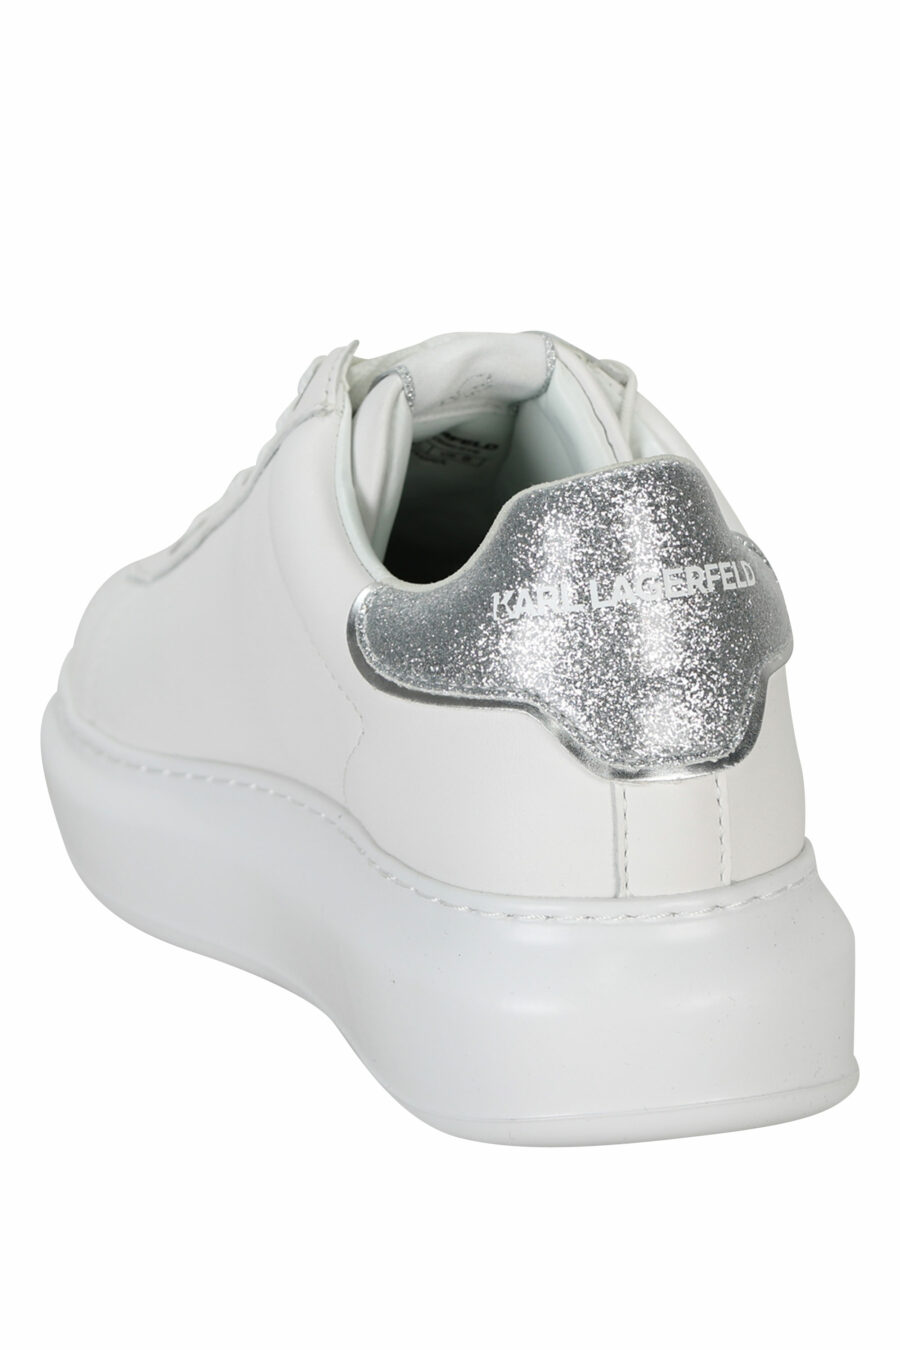 Zapatillas blancas "Kapri" con logo en goma y detalle plateado brillante - 5059529351174 3